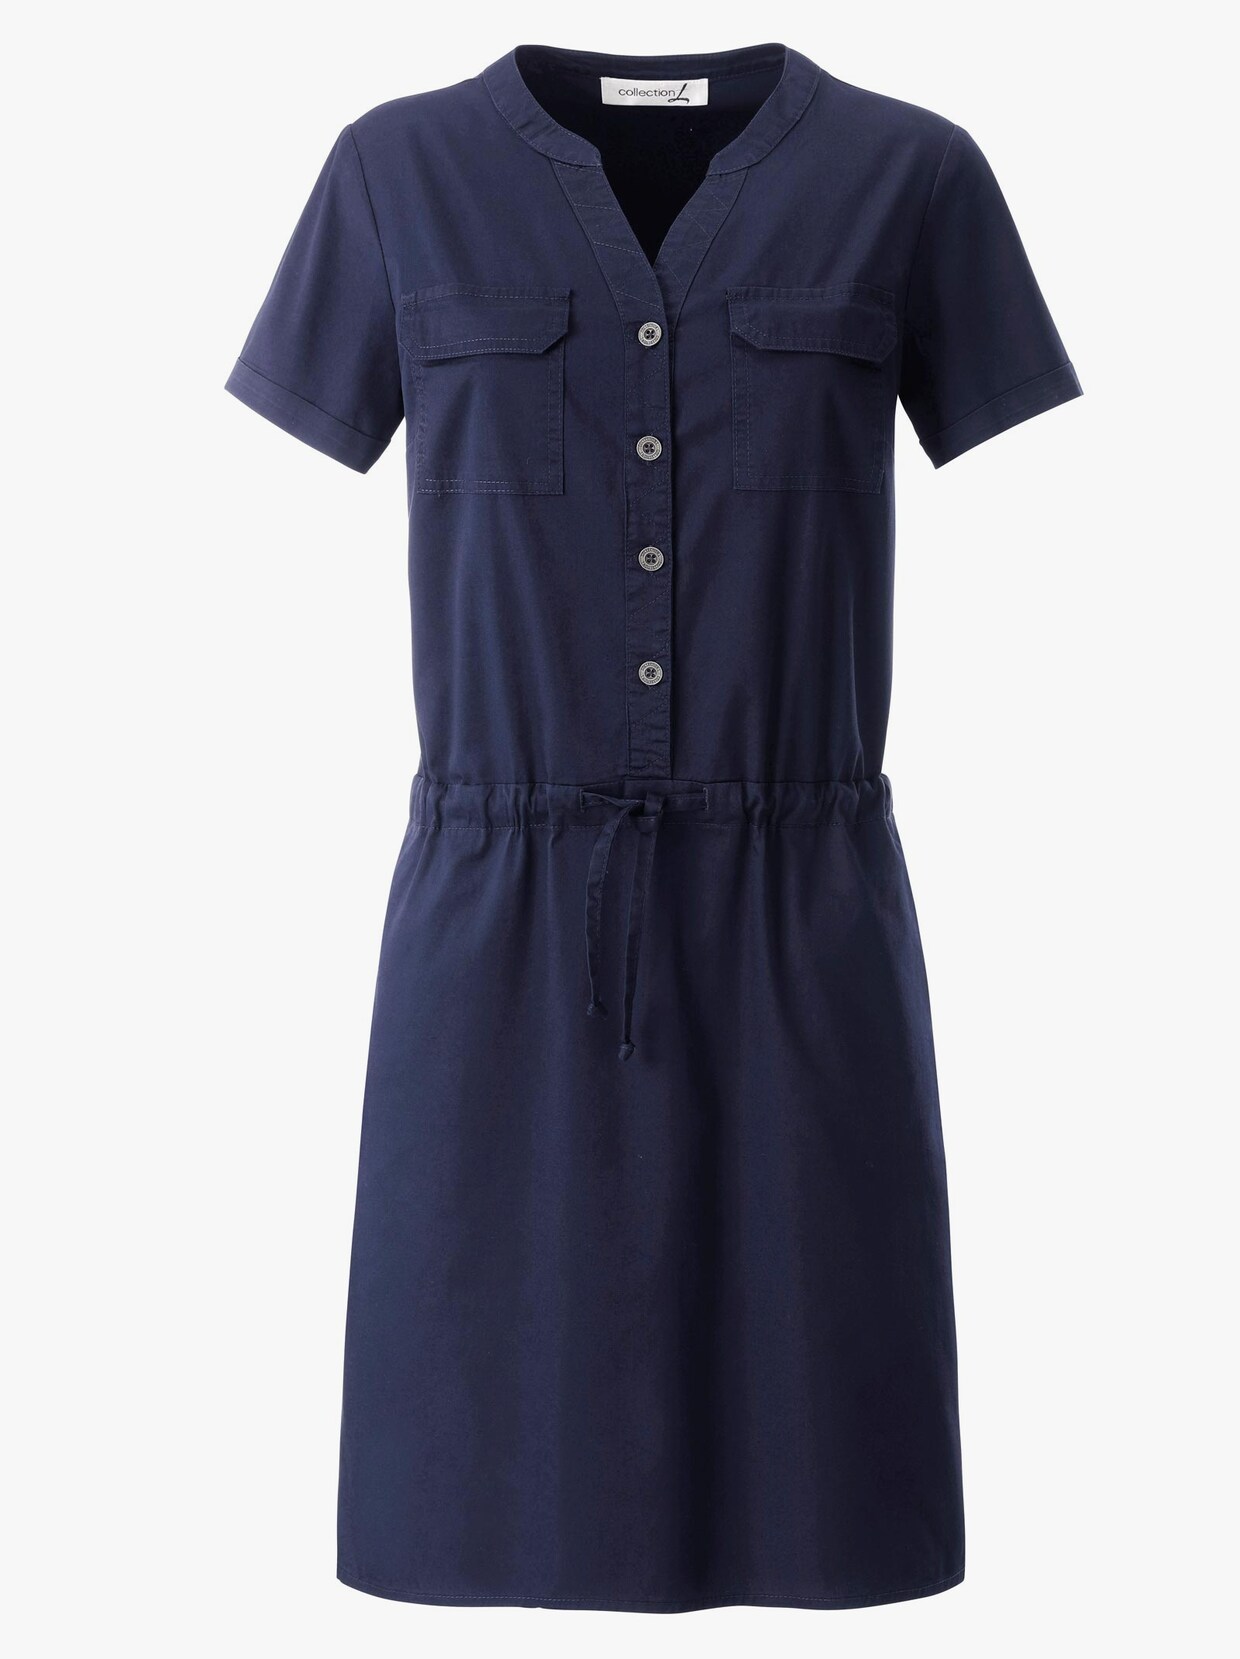 Blúzkové šaty - námornícka modrá